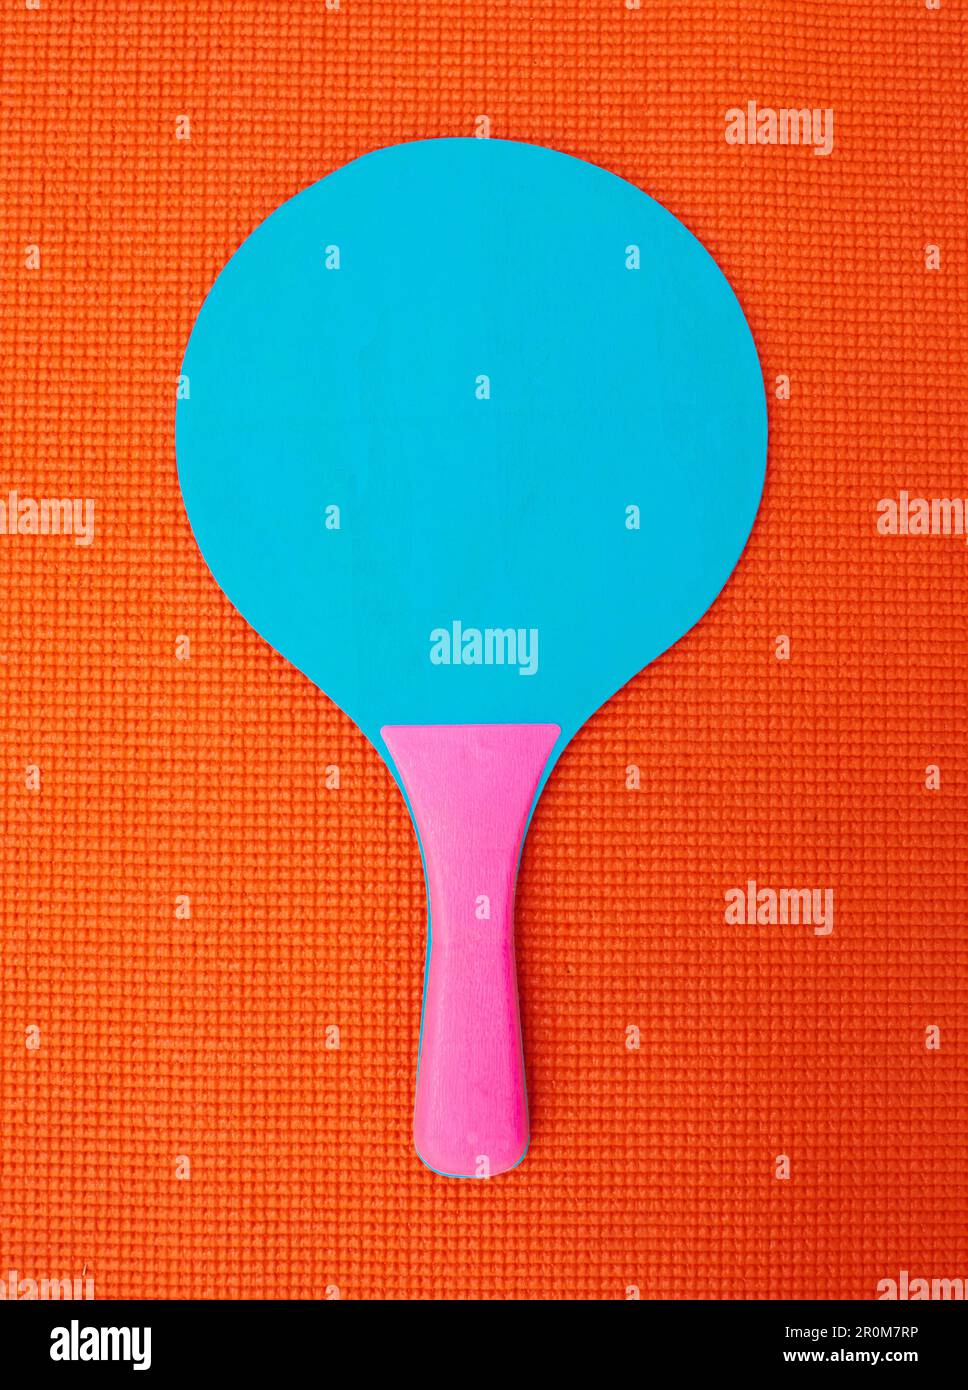 Sieht aus, als wäre es nur ich. Aufnahme eines Tischtennisschlägers aus einem hohen Winkel auf einem orangefarbenen Hintergrund in einem Studio. Stockfoto